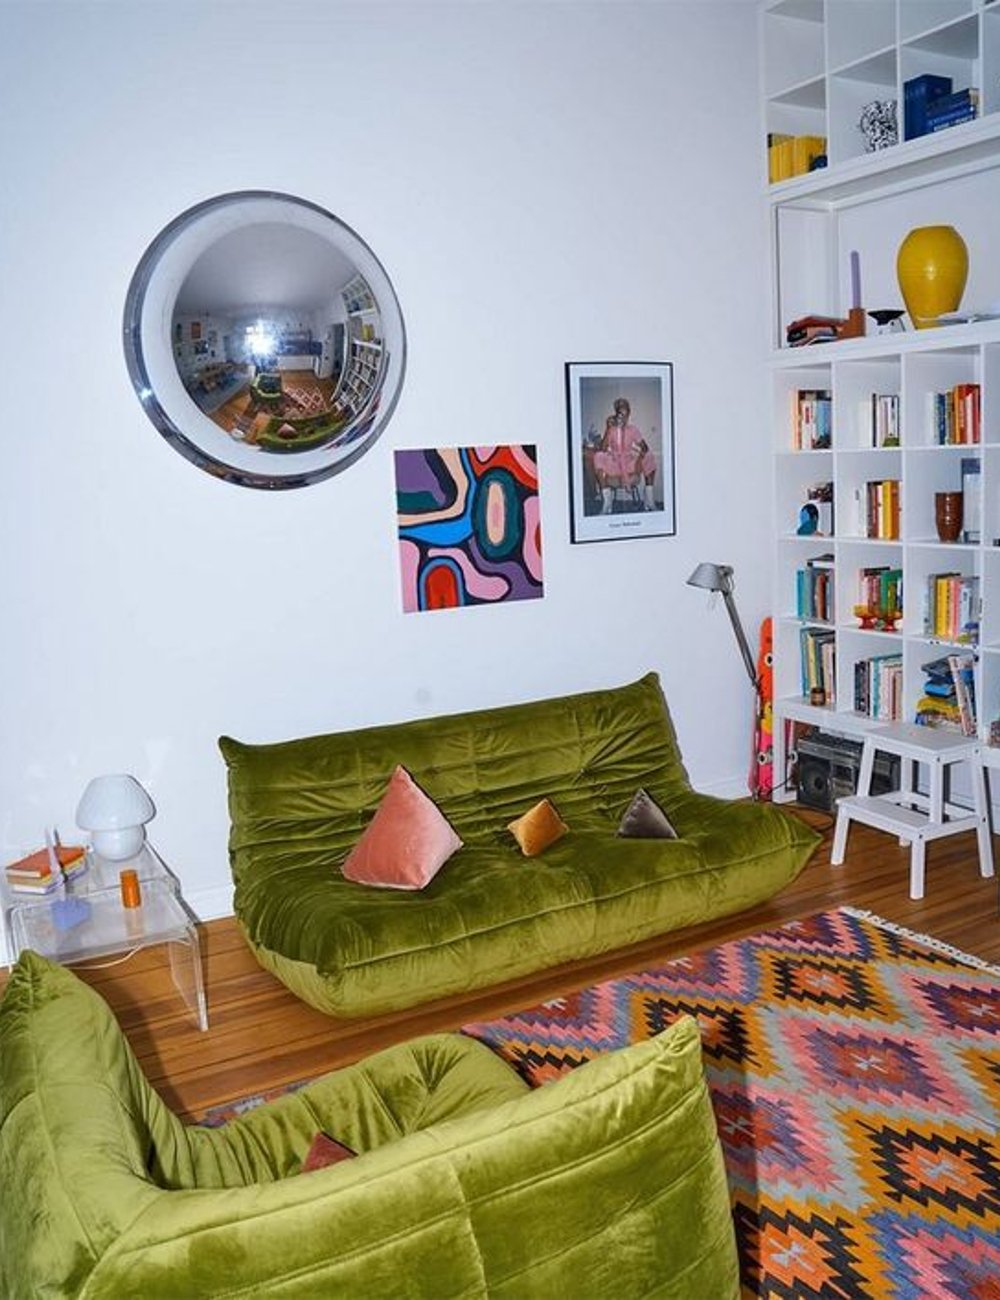 Sofá - decor - sofá togo - tendência - decoração - https://stealthelook.com.br